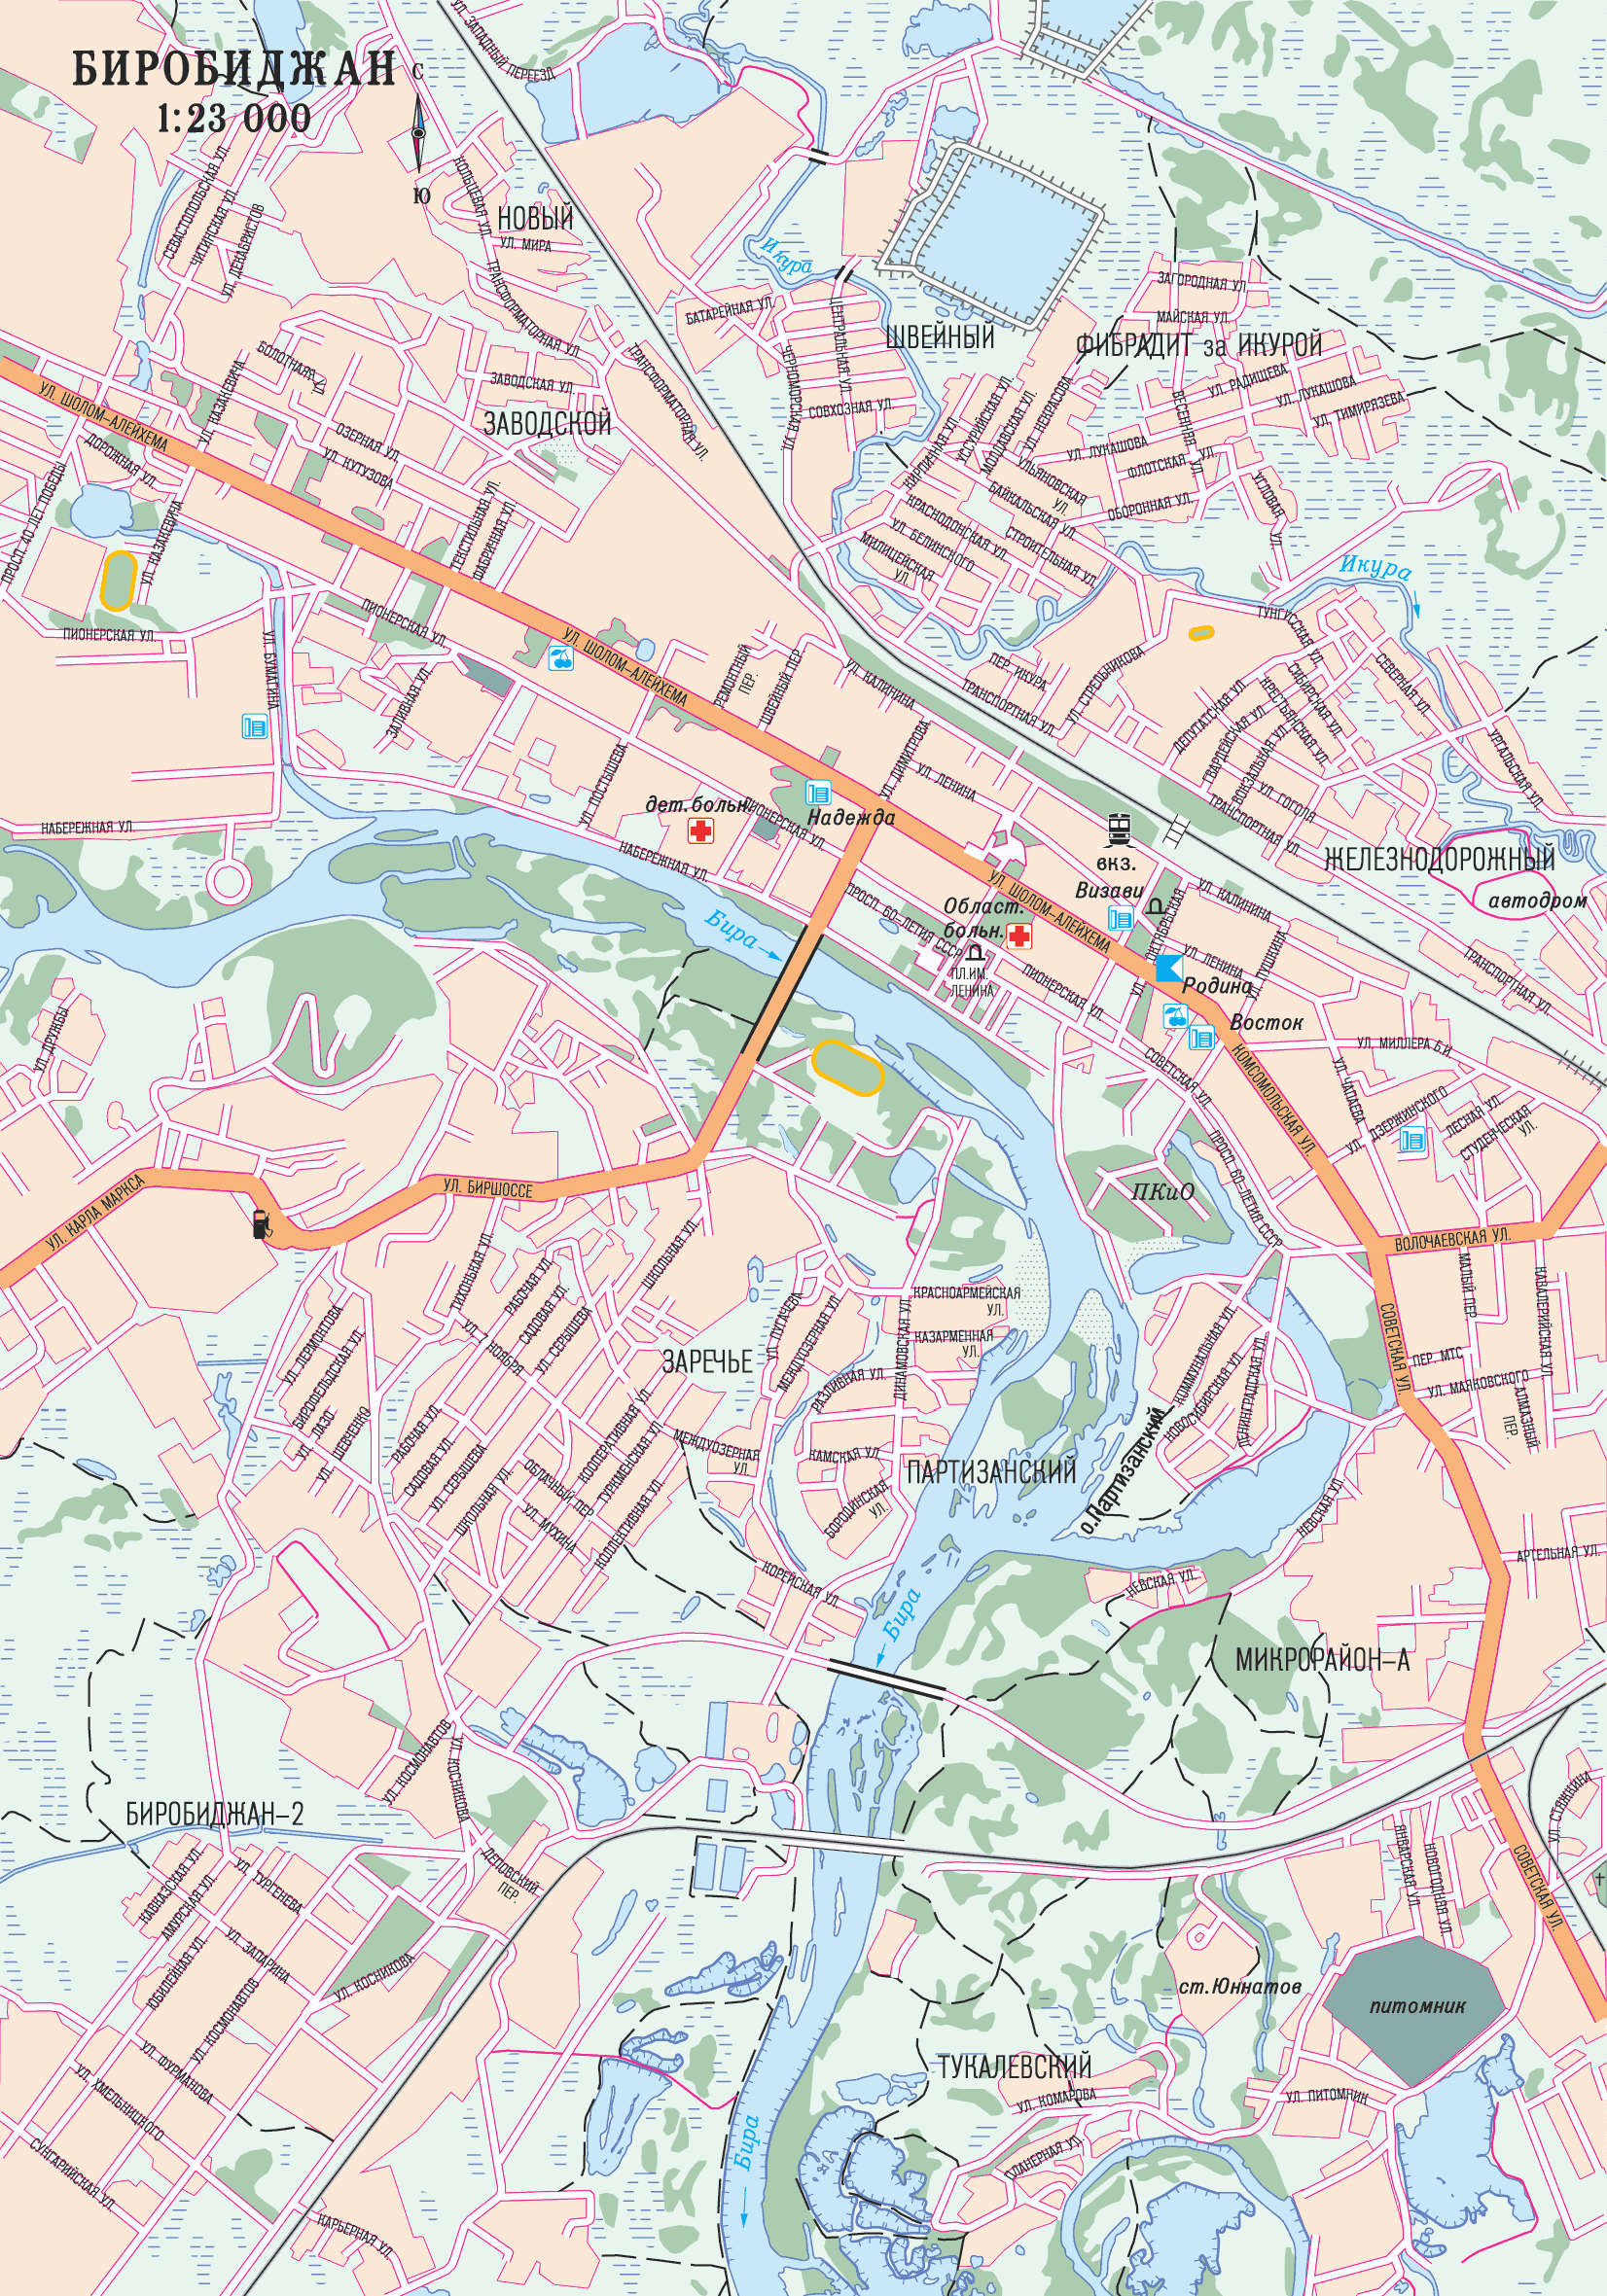 Map of Birobidzhan